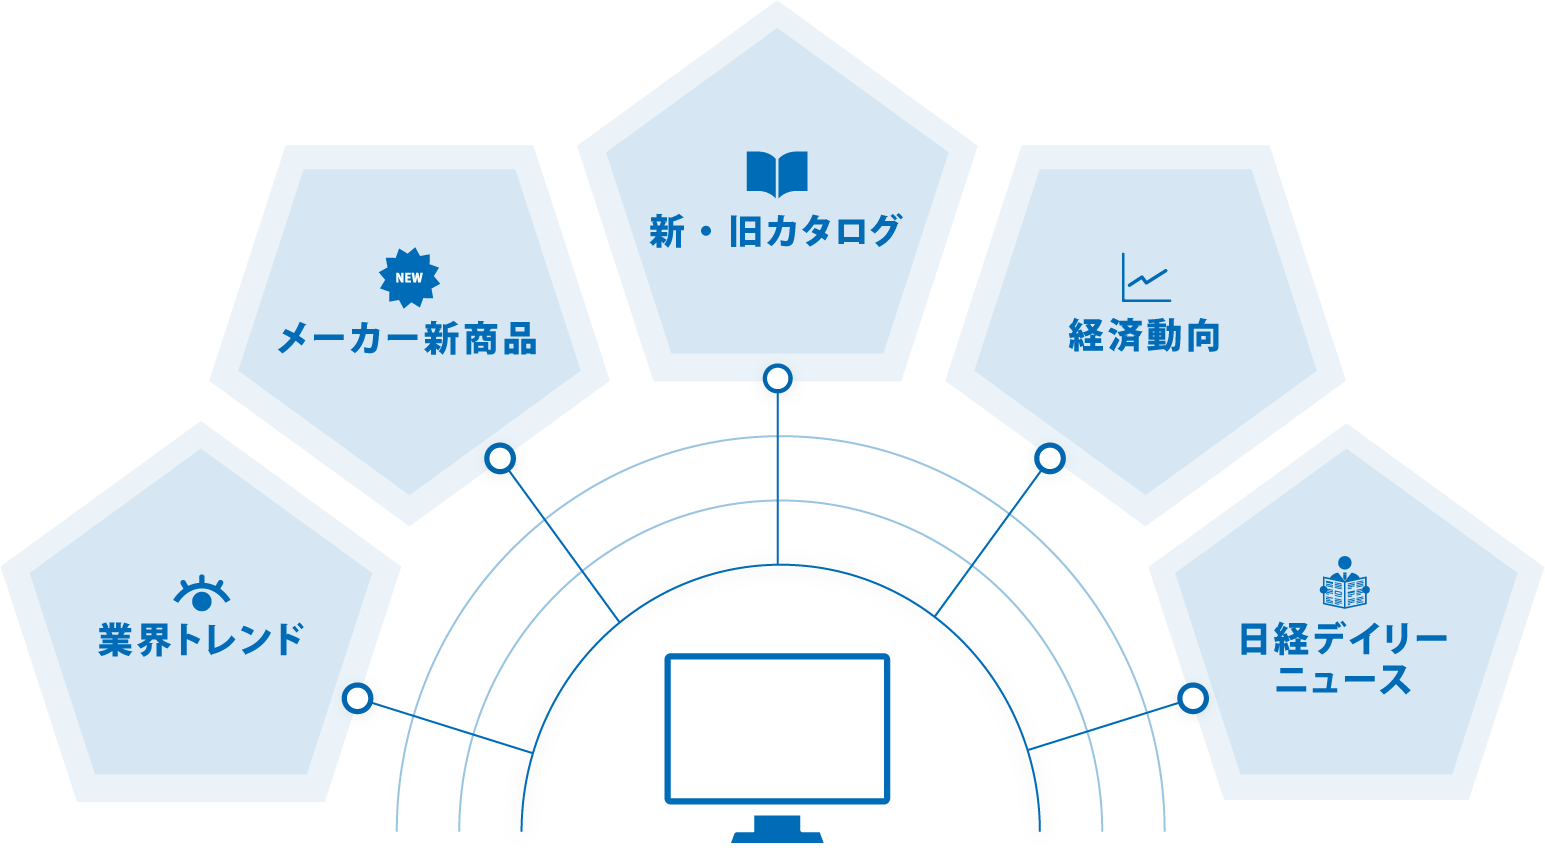 橋本総業の情報コンテンツ